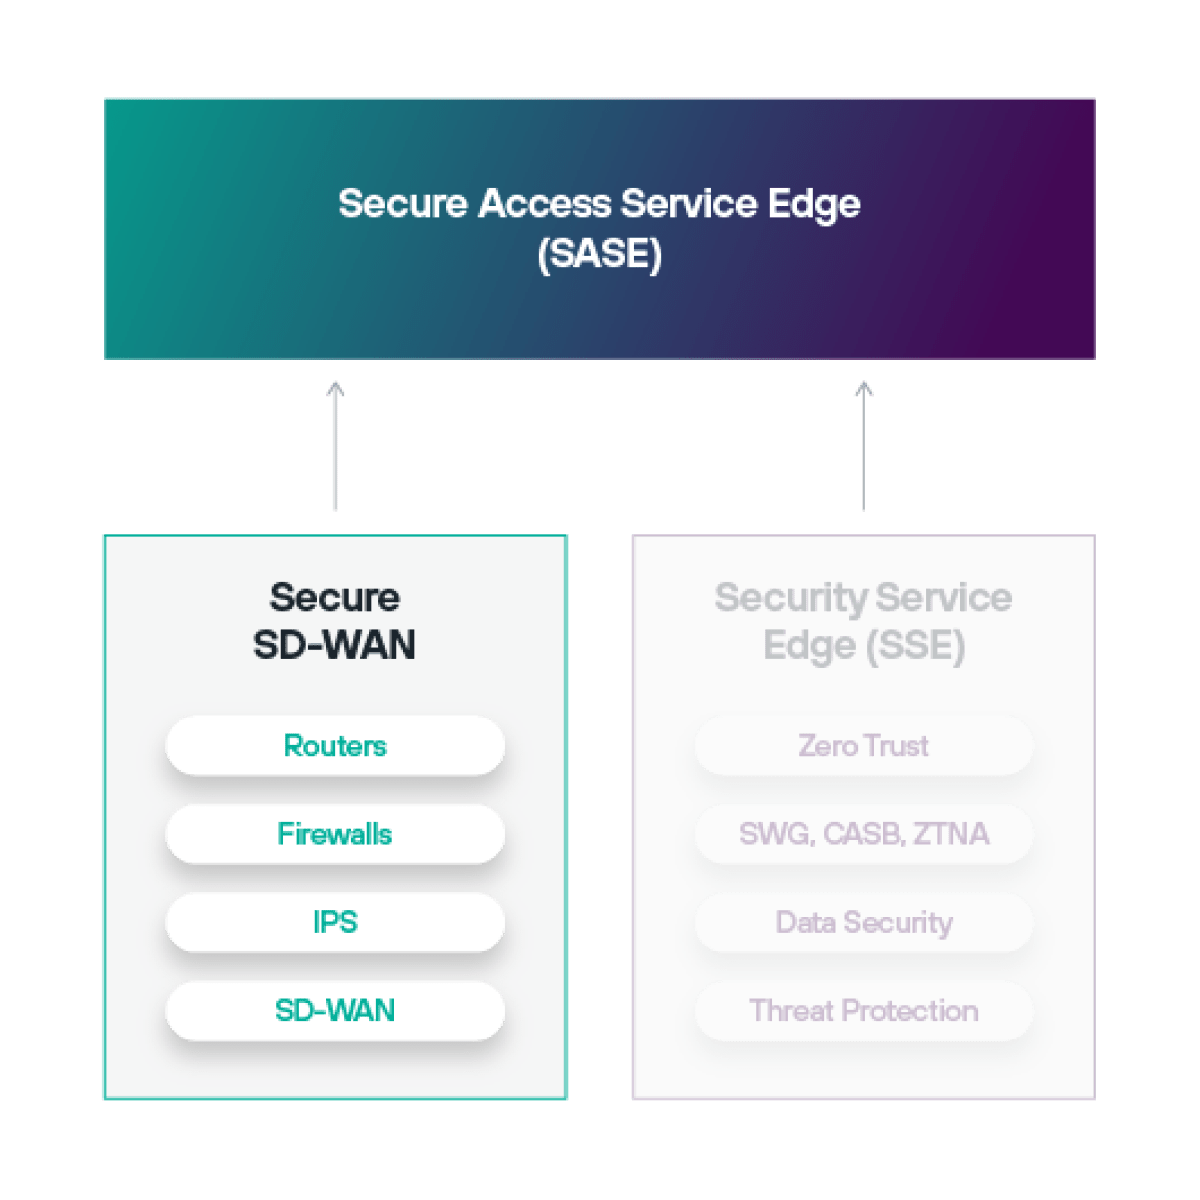 Il Software-Defined Wide Area Networking (SD-WAN) è parte dell'architettura Secure Access Service Edge (SASE).